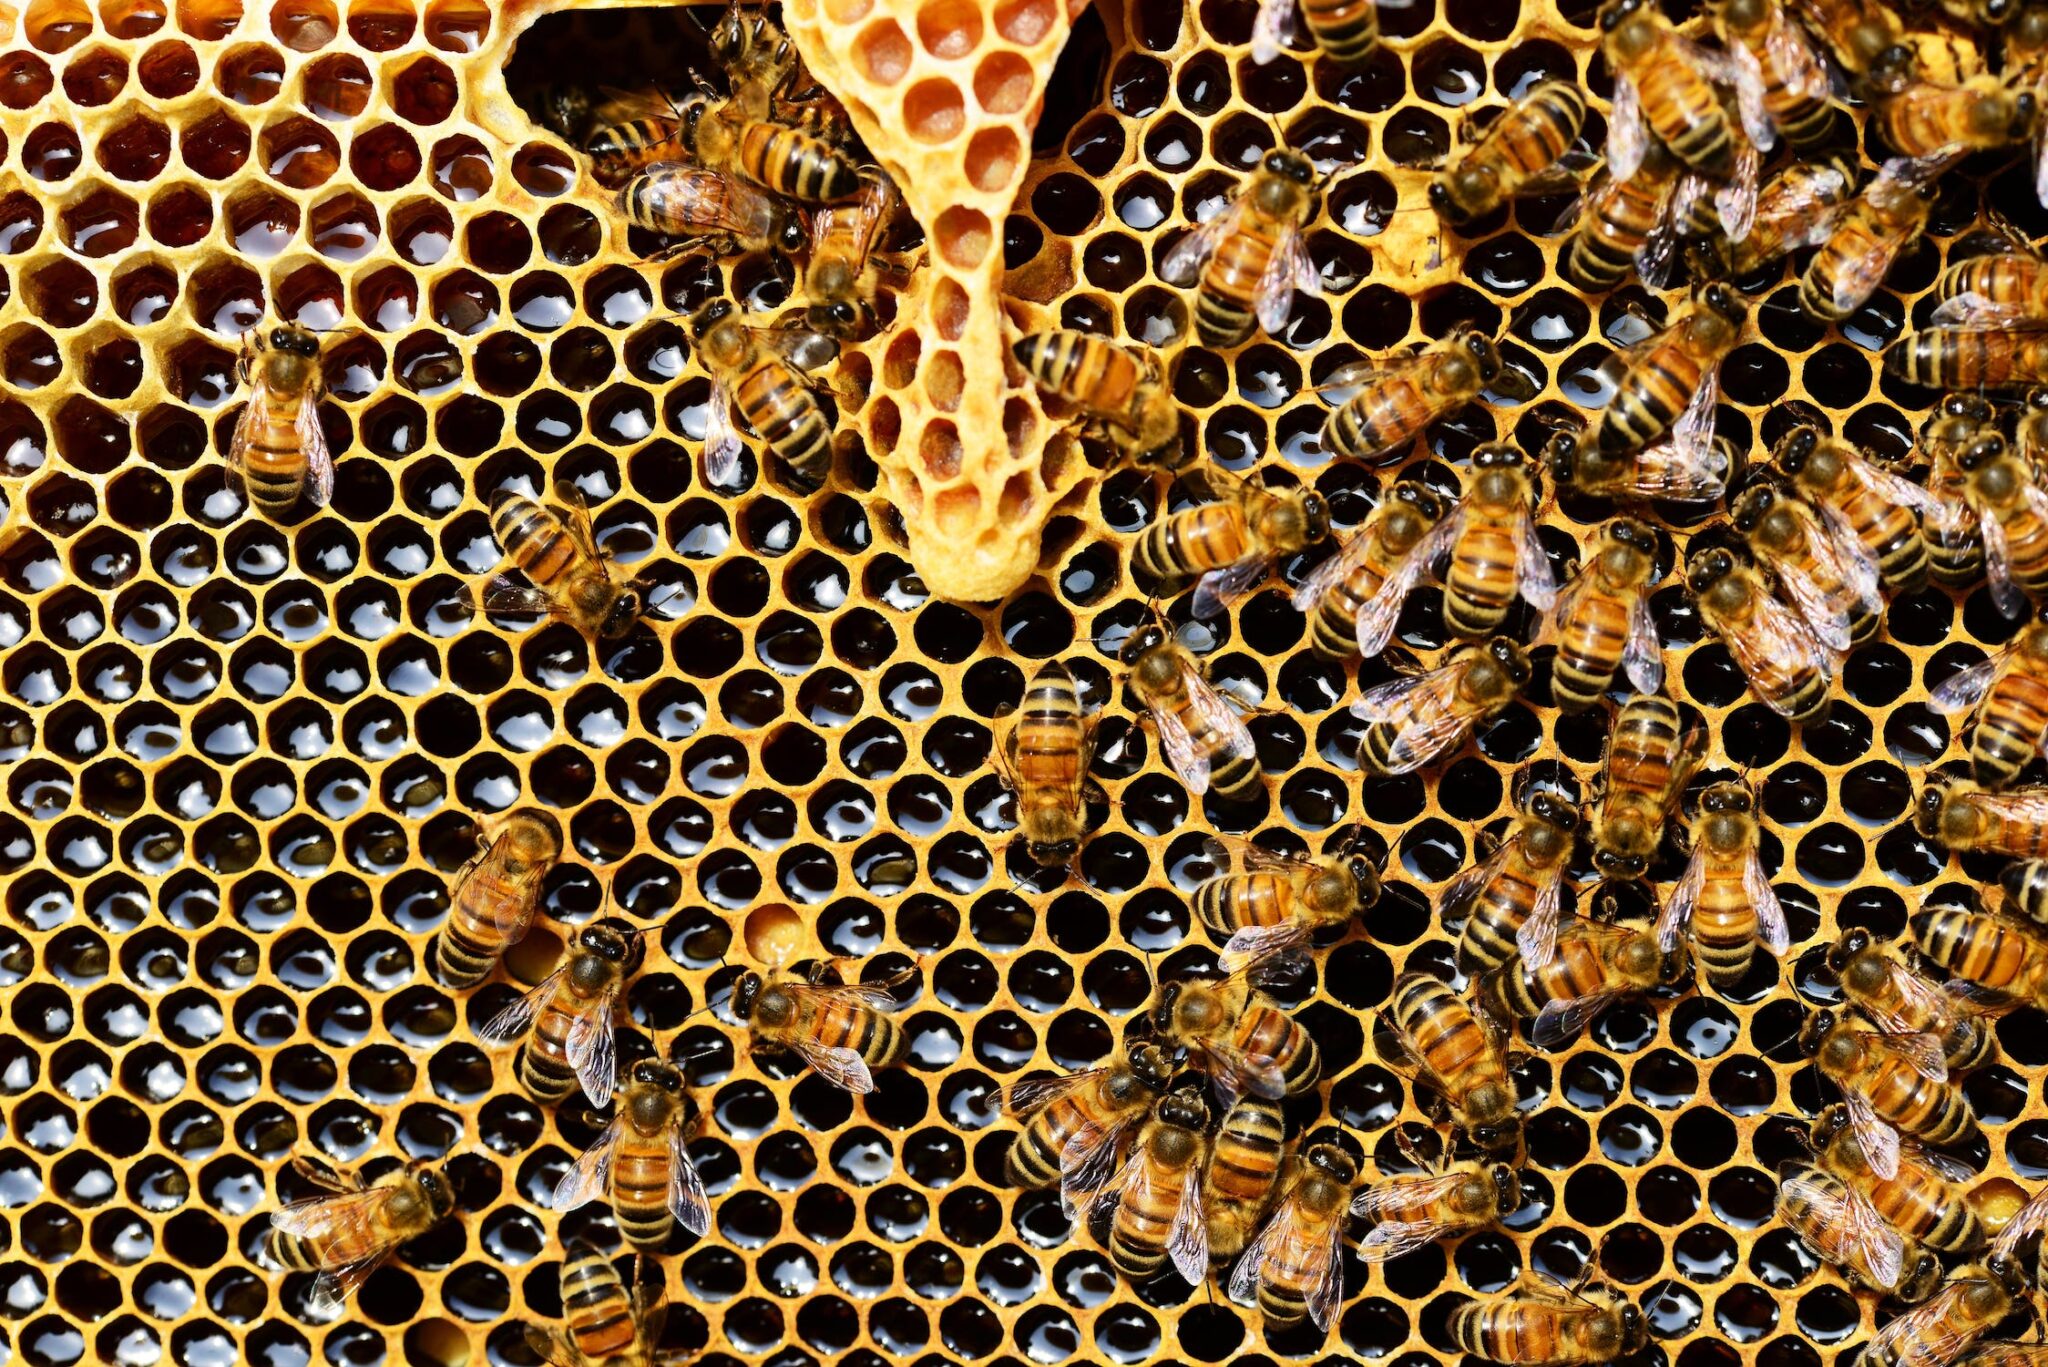 apis-mellifera-bee-beehive-beekeeping-bees